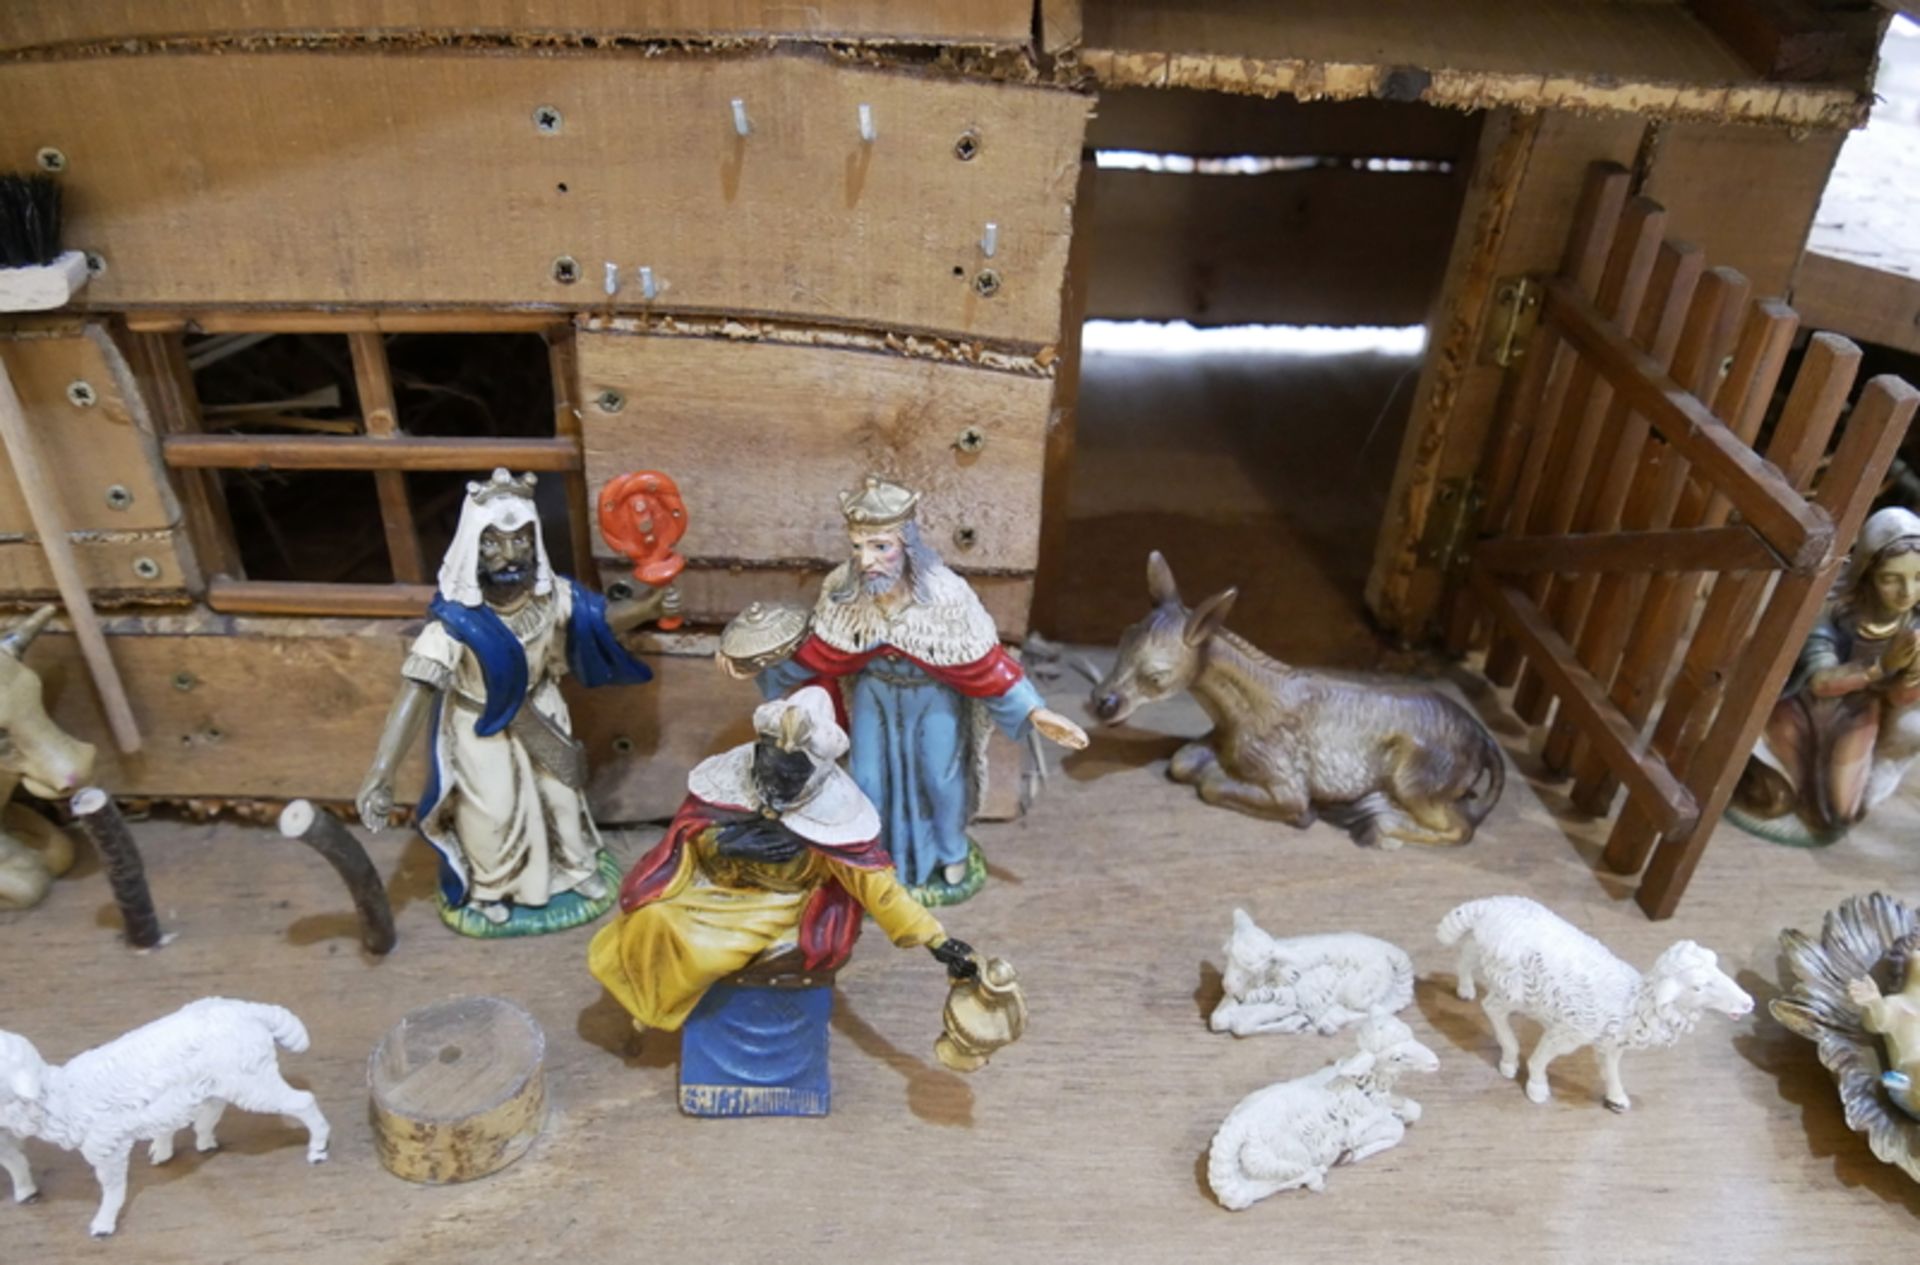 große Holzkrippe mit Beleuchtung. Dabei 17 Krippenfiguren, Josef, Maria, Jesuskind, Schafe, etc. - Image 2 of 4